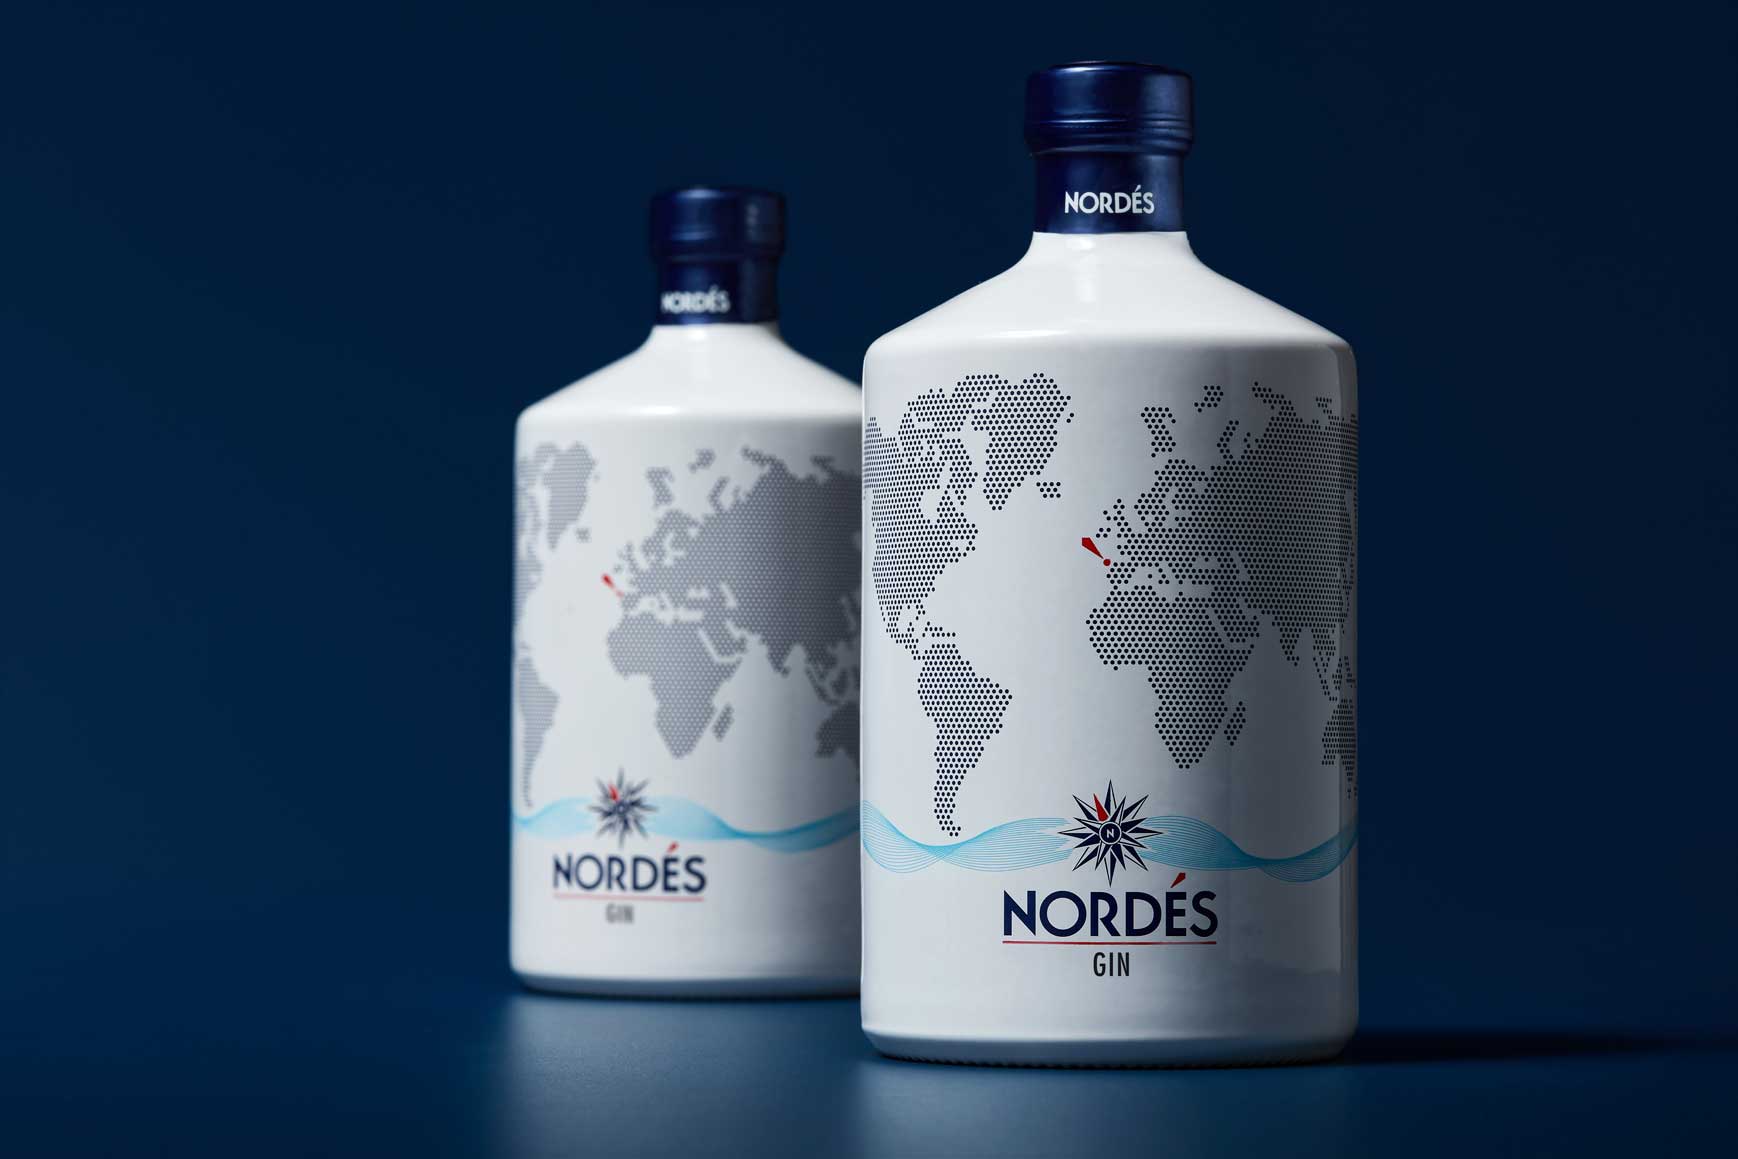 Nordes Atlantic Schuber Geschenkset Gin aus Galizien 0,7l (40% Vol) + 2x Gläser Tumbler weiss + 2x Goldberg Japanese Yuzu Tonic 200ml inkl. Pfand EINWEG -[Enthält Sulfite]